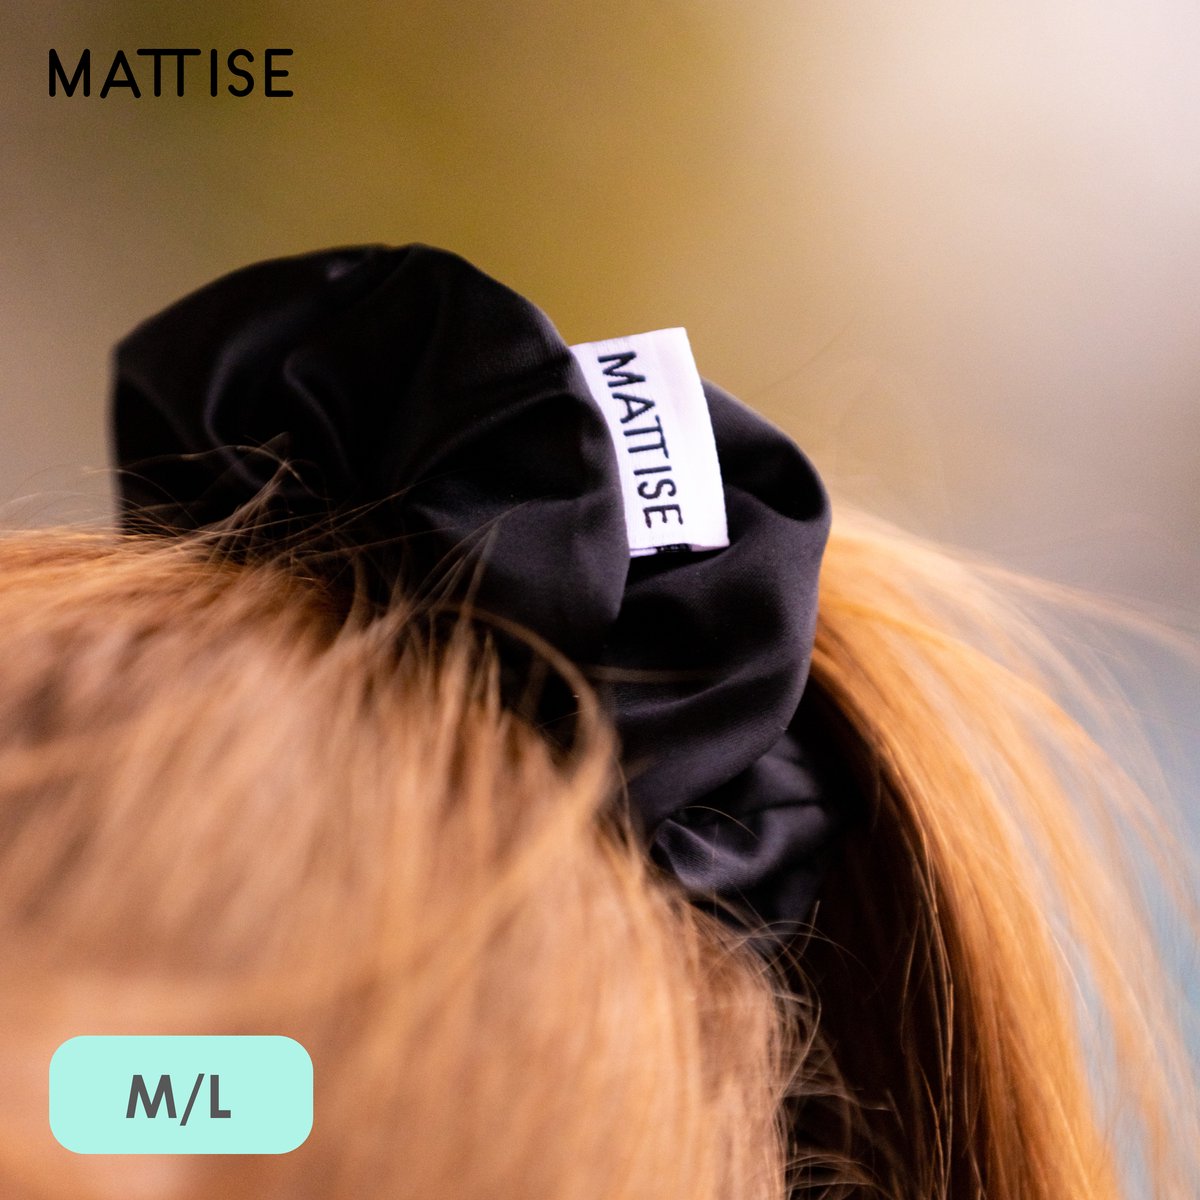 MATTISE Scrunchie Zwart van Hoogwaardig Satijn — Maat M/L (Diameter 12 cm) — Zwarte Haarband voor Dames en Meisjes Scrunchies